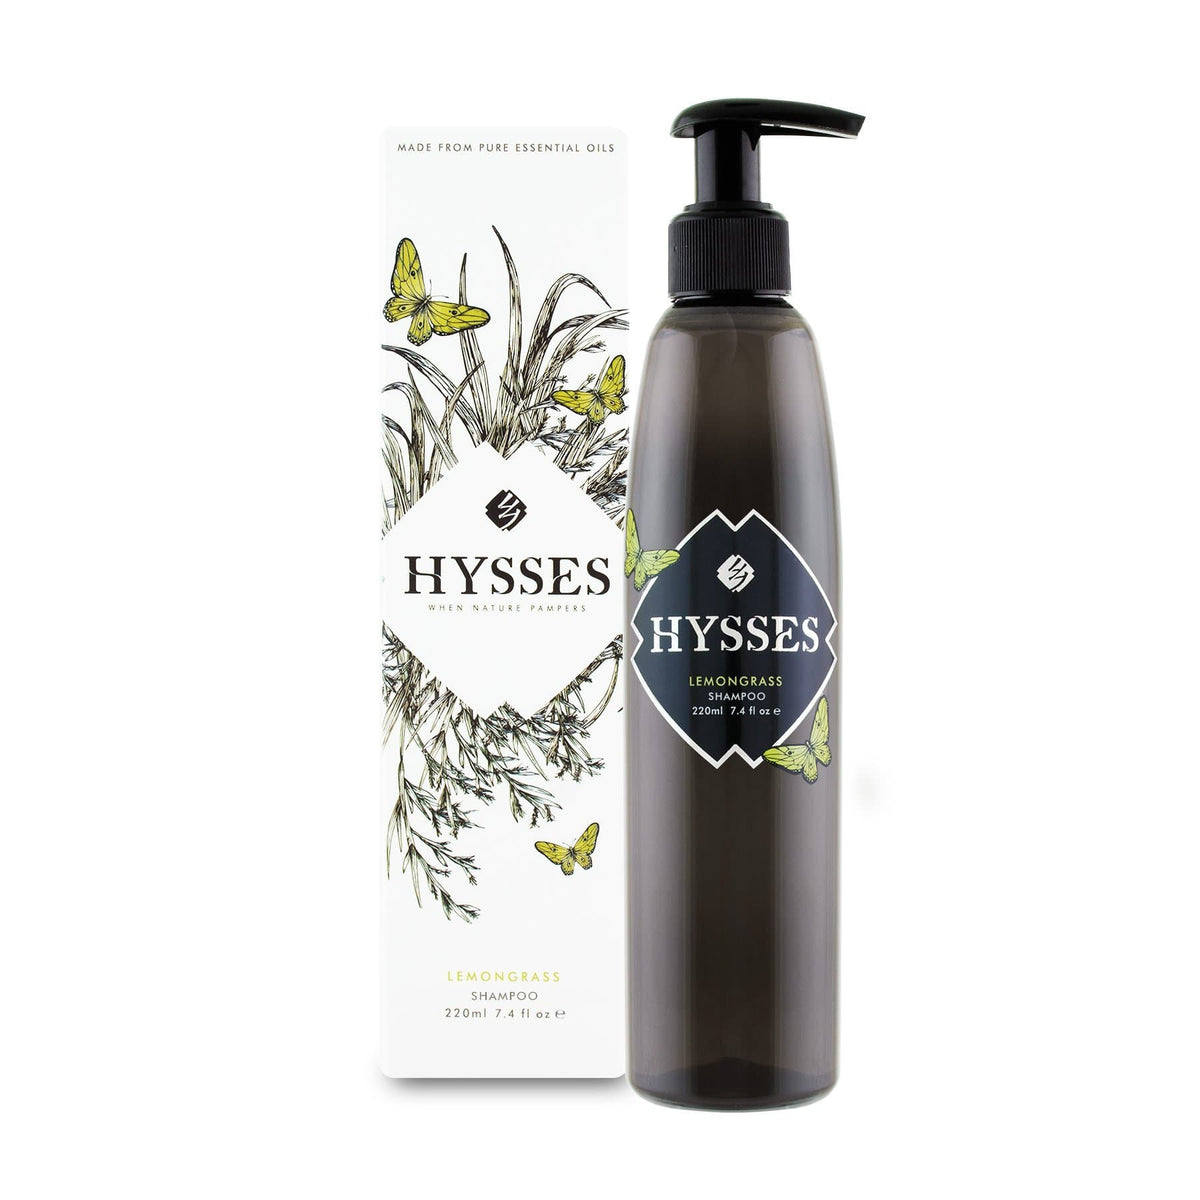 Hysses Hair Care 220ml Shampoo Lemongrass